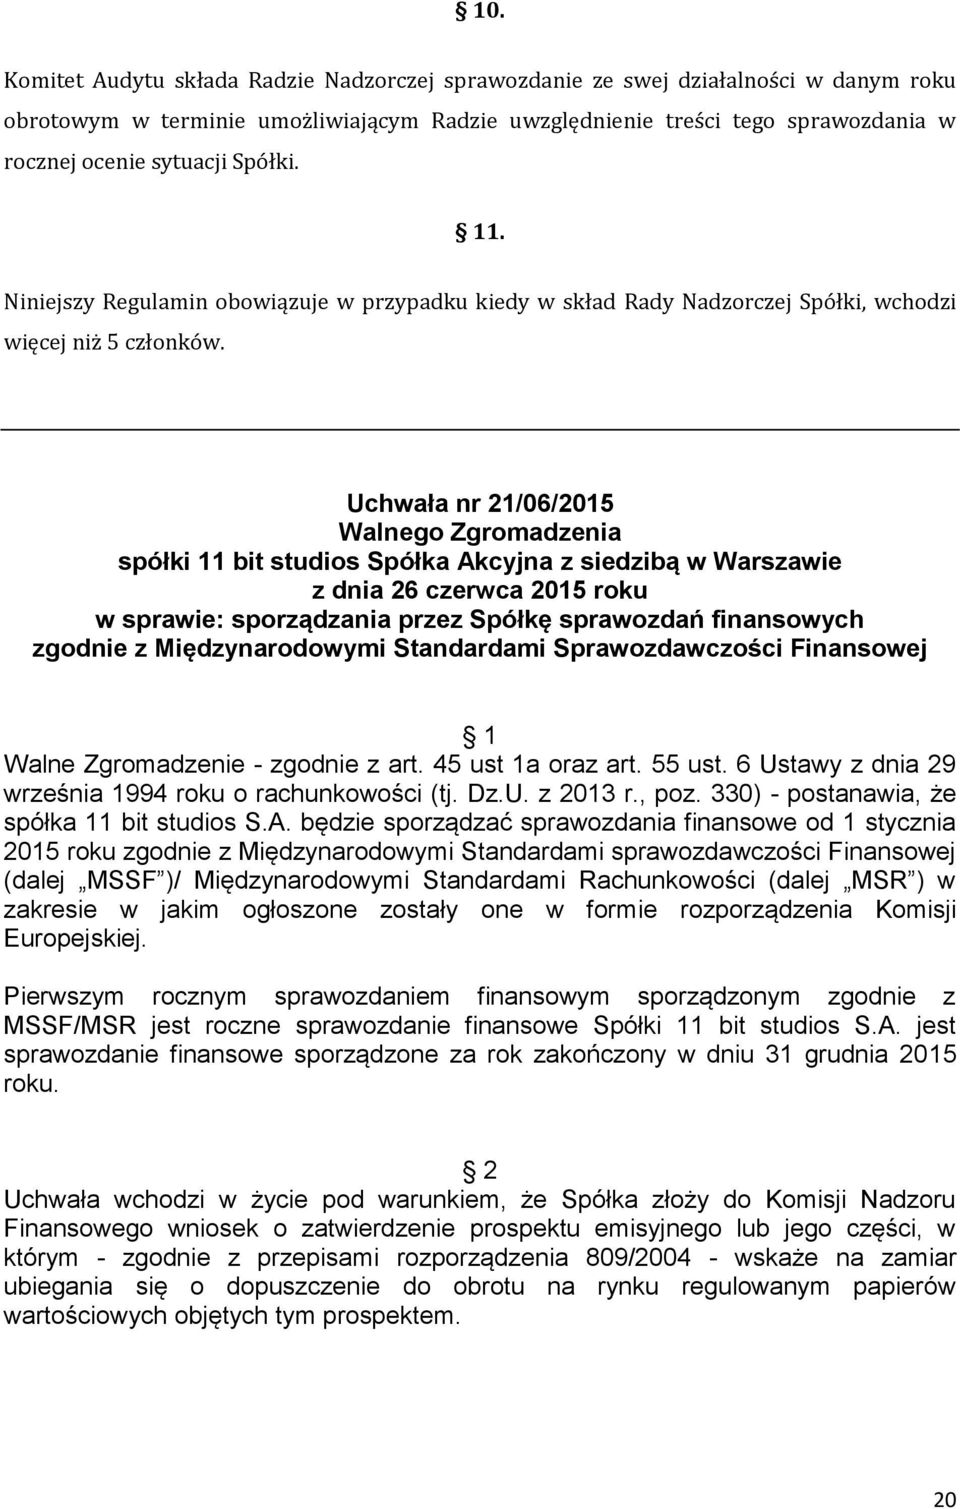 Uchwała nr 21/06/2015 Walnego Zgromadzenia spółki 11 bit studios Spółka Akcyjna z siedzibą w Warszawie z dnia 26 czerwca 2015 roku w sprawie: sporządzania przez Spółkę sprawozdań finansowych zgodnie